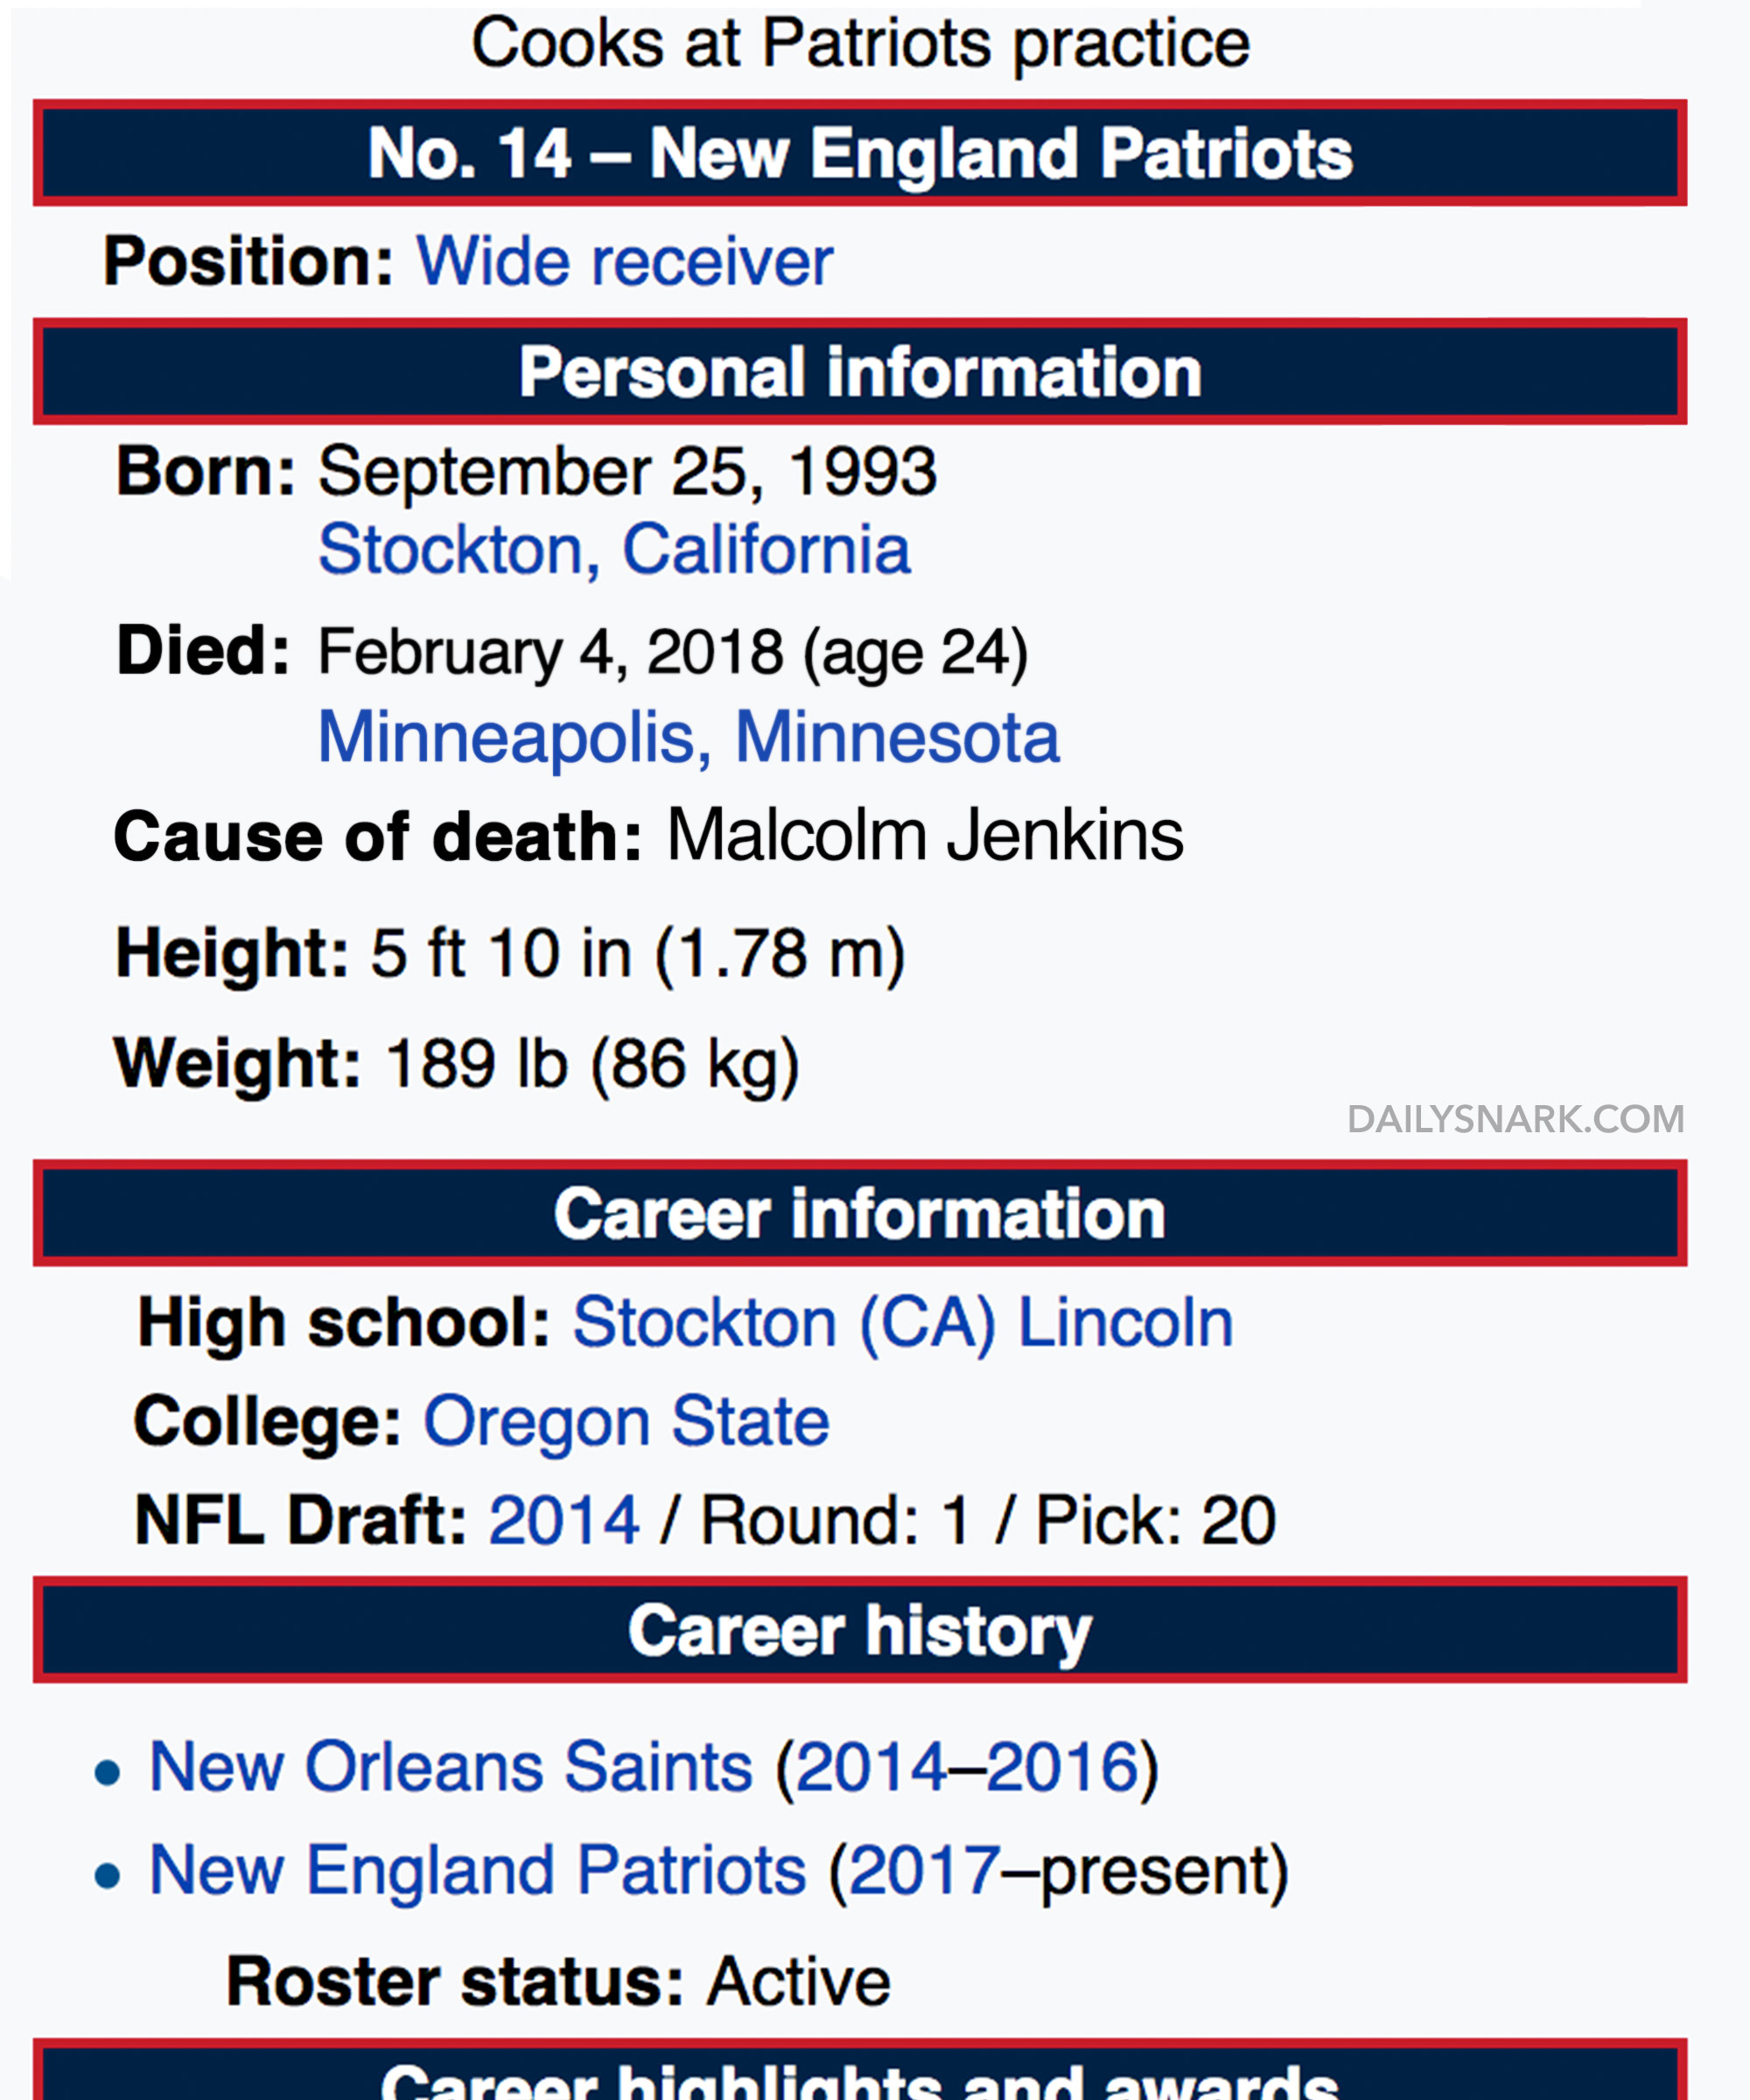 Super Bowl LII - Wikipedia